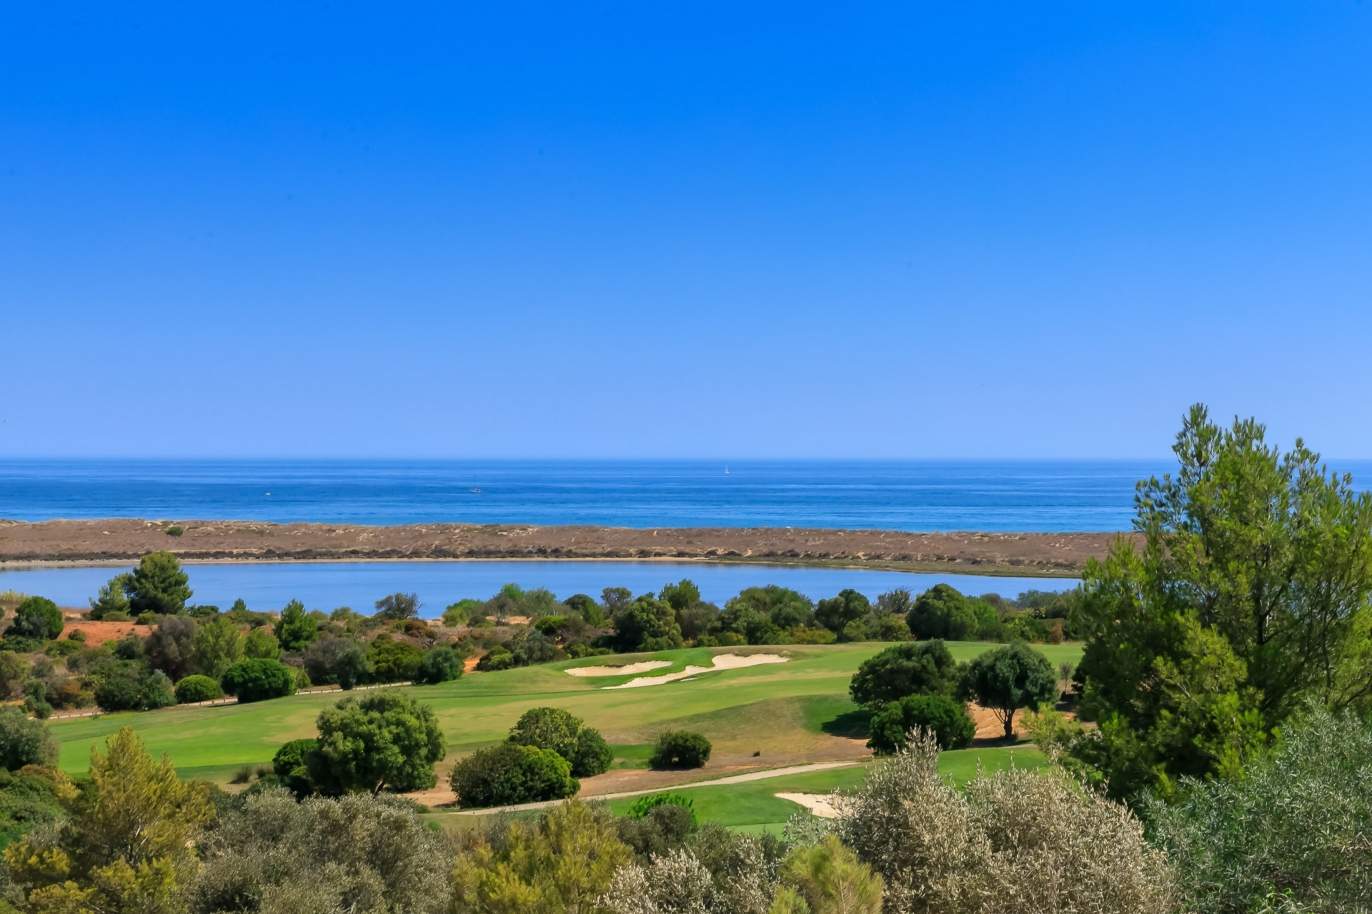 Terrain à vendre dans un complexe de golf, Lagos, Algarve, Portugal_122920